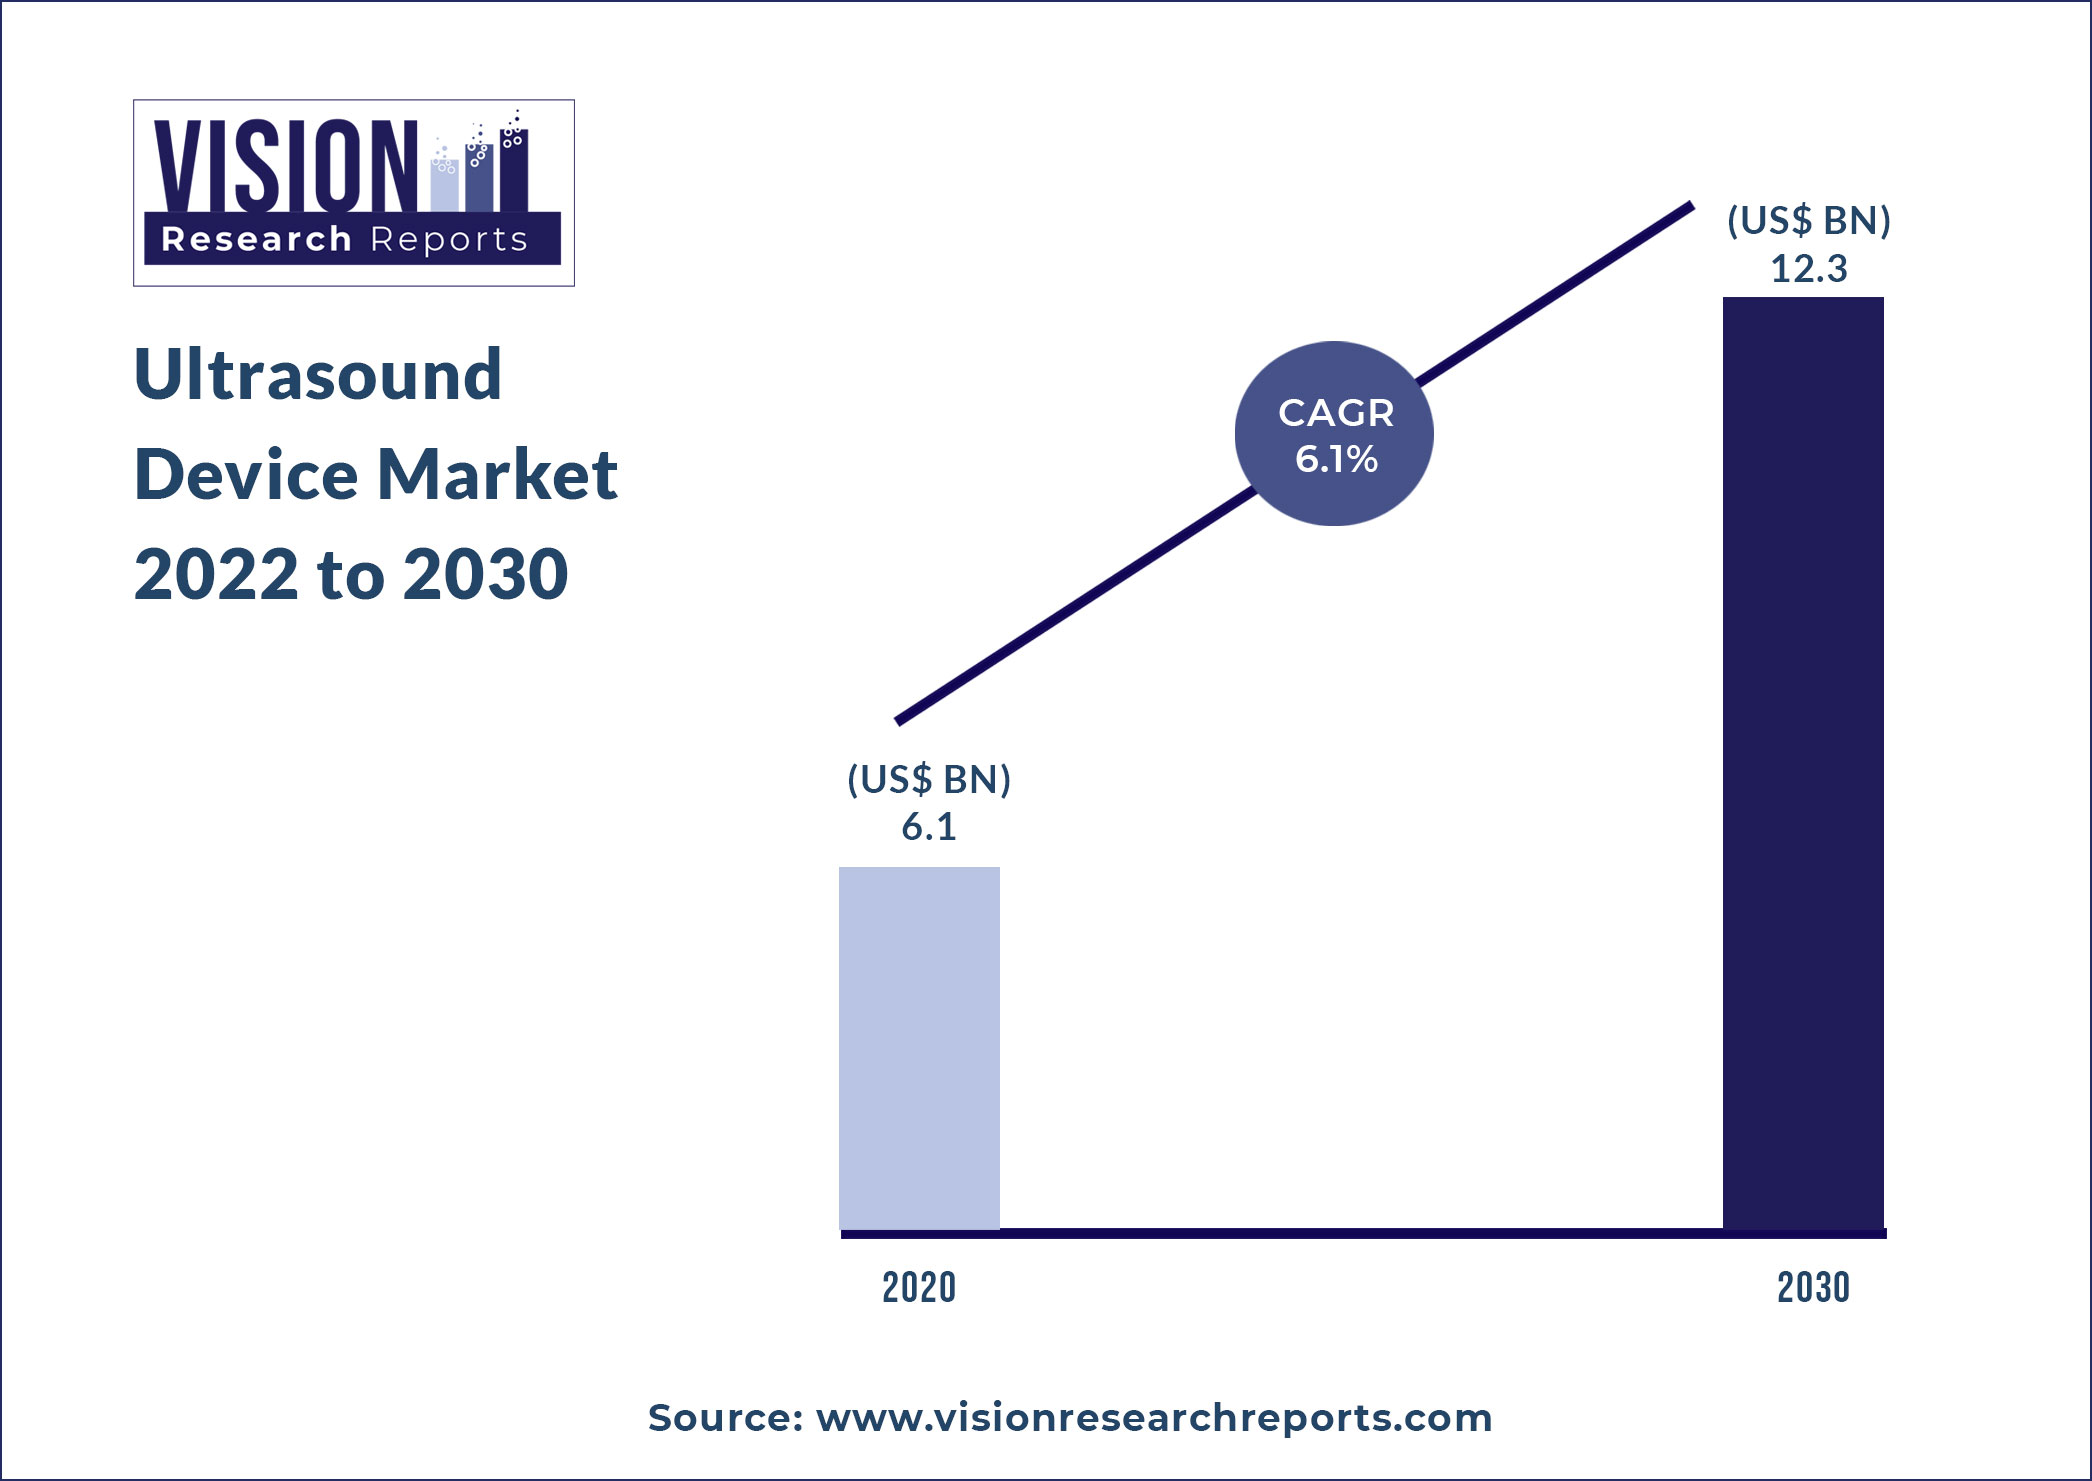 Ultrasound Device Market Size 2022 to 2030